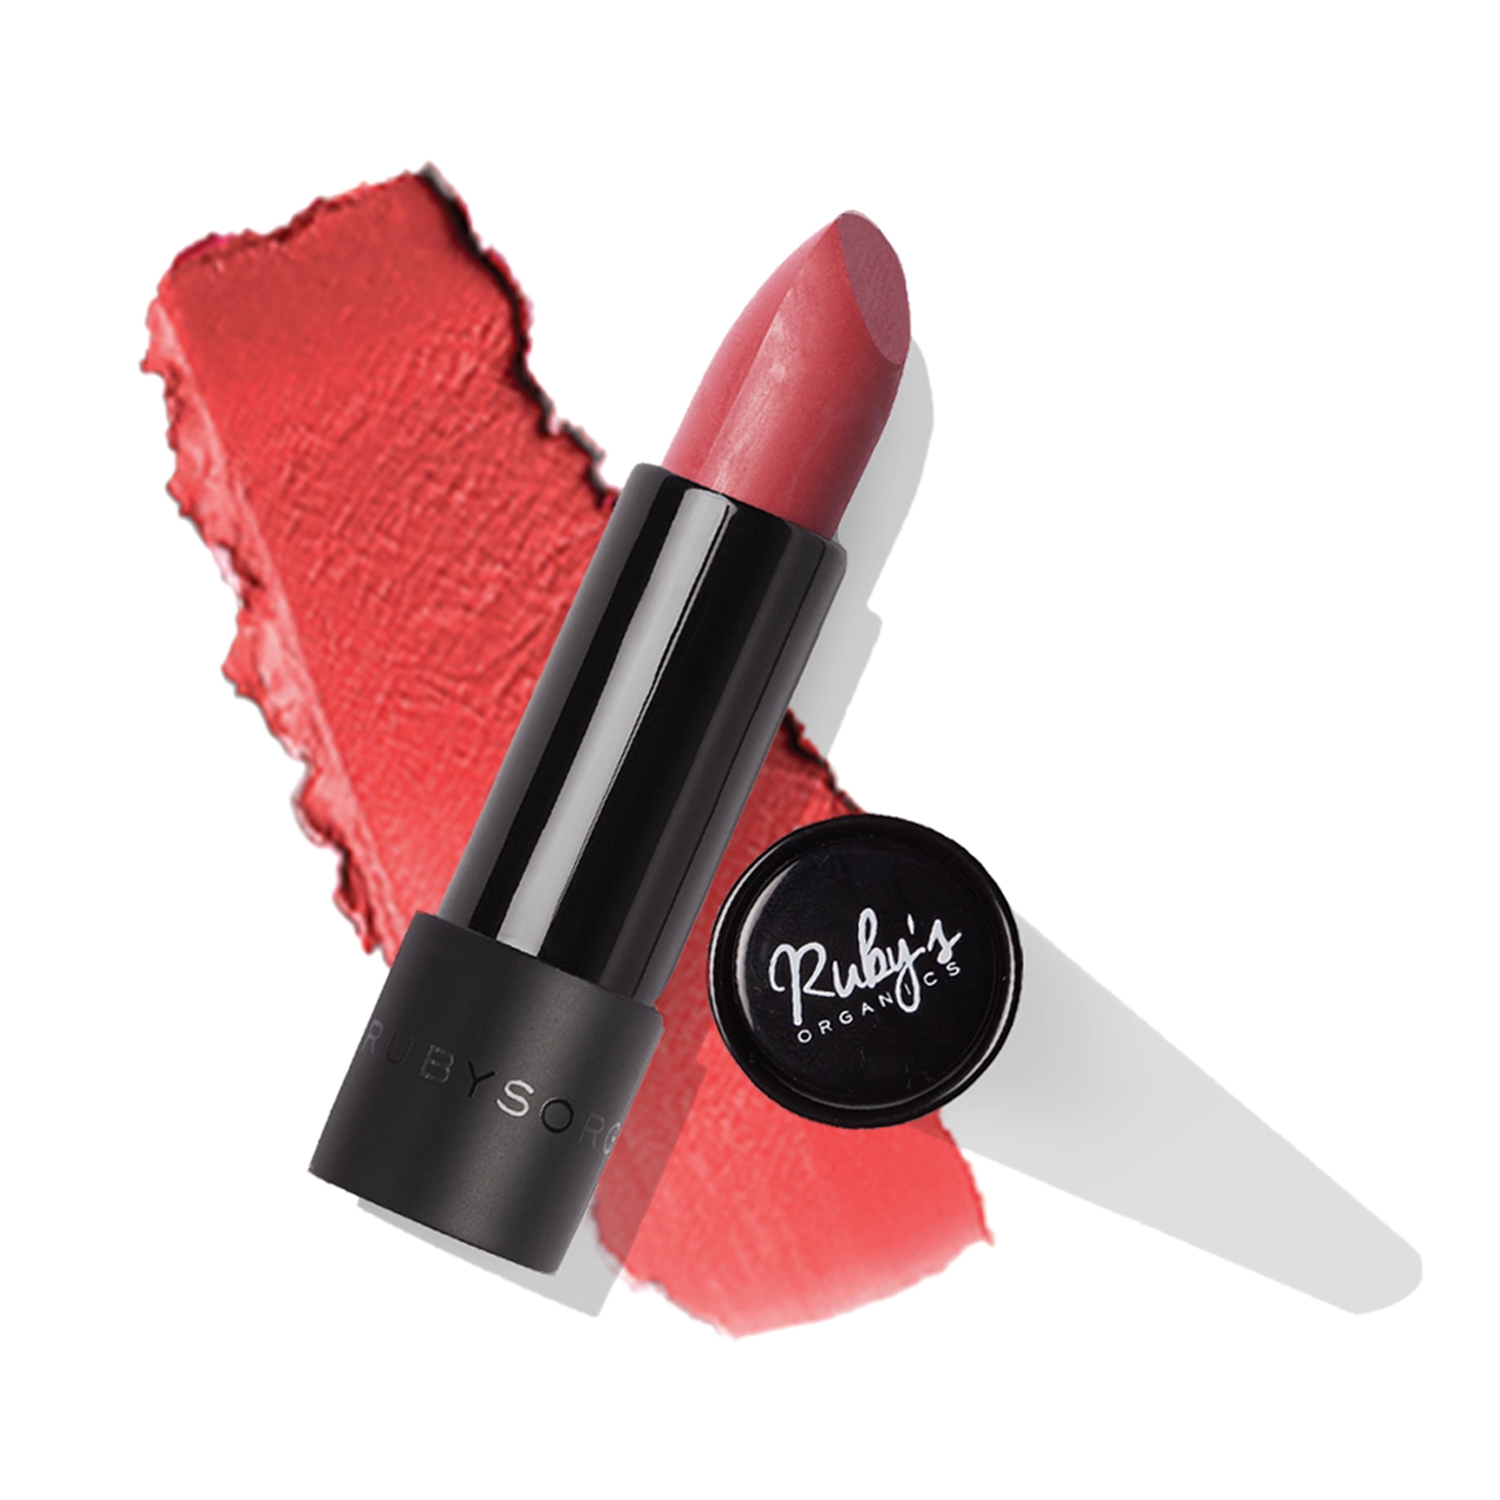 Ruby's Organics Lipstick - Apricot (3.7g)